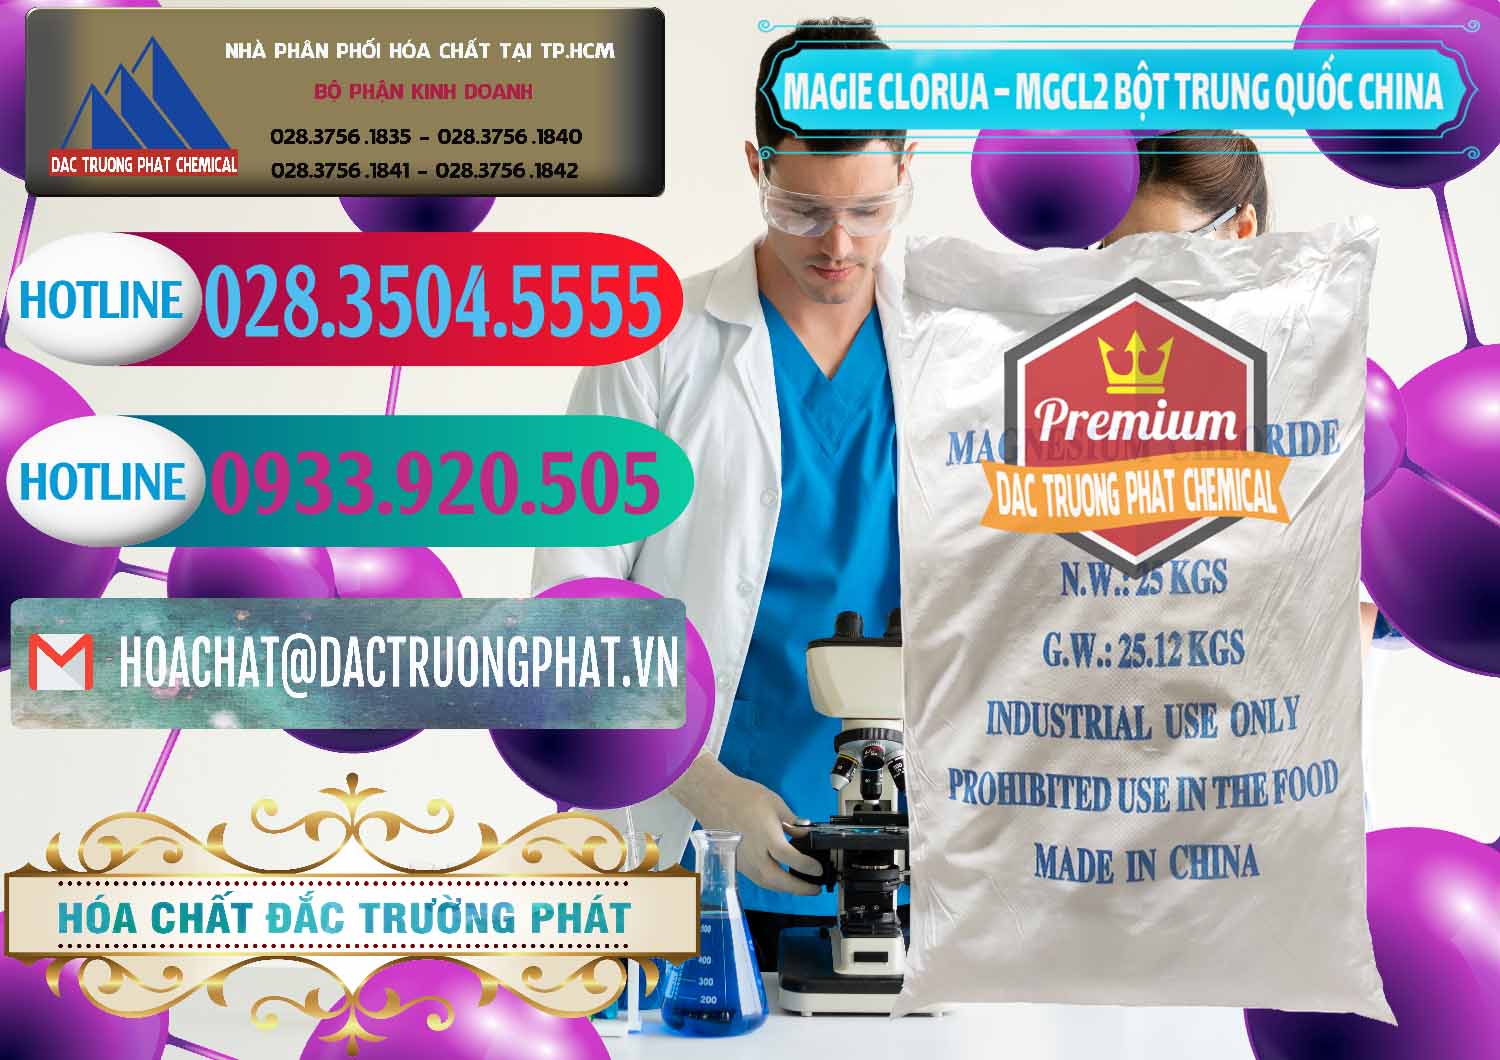 Cty chuyên phân phối & bán Magie Clorua – MGCL2 96% Dạng Bột Bao Chữ Xanh Trung Quốc China - 0207 - Đơn vị phân phối - bán hóa chất tại TP.HCM - truongphat.vn